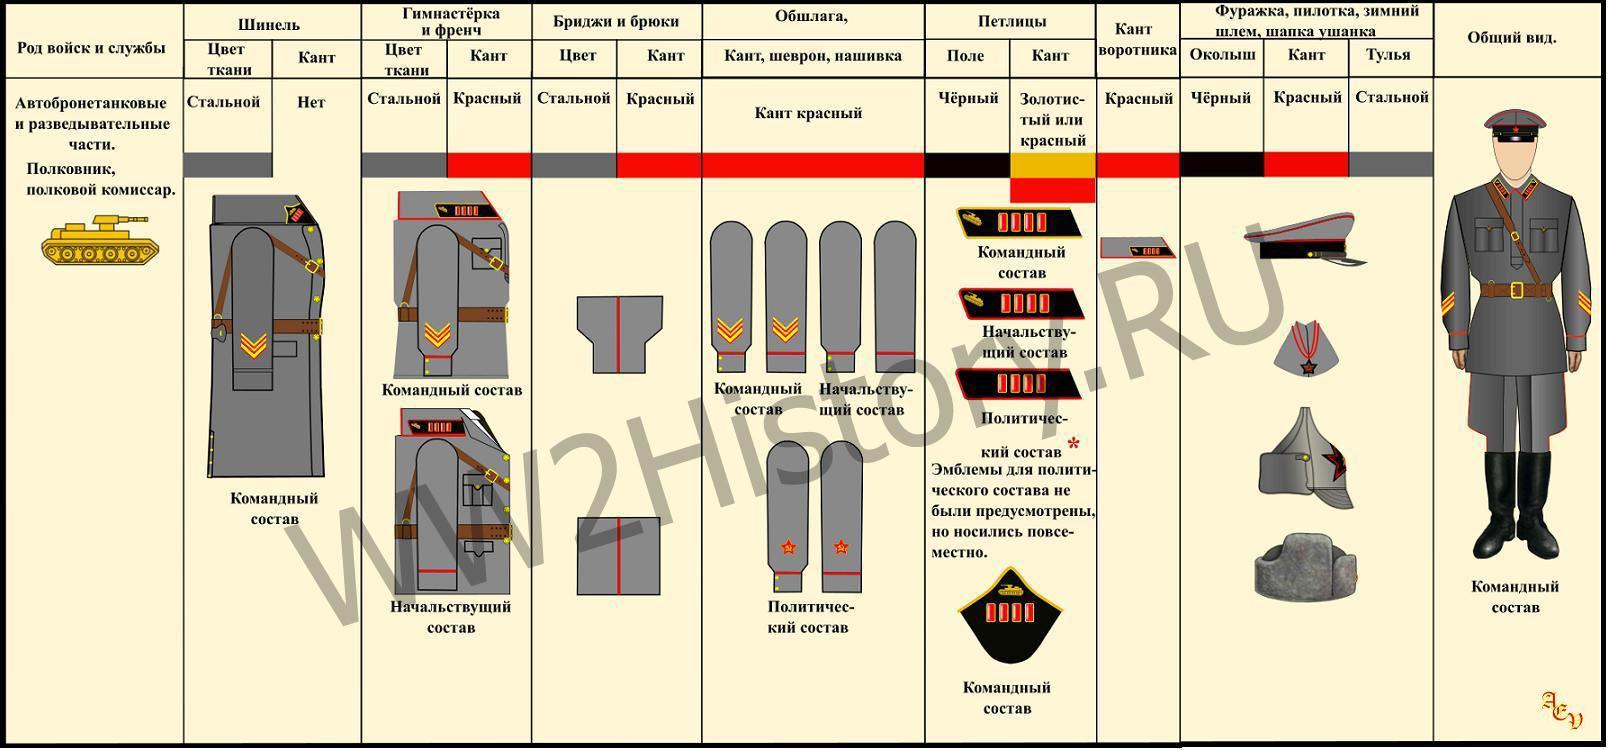 Таблица формы одежды командного, начальствующего и политического состава РККА на 22.6.1941 года 3fed2395